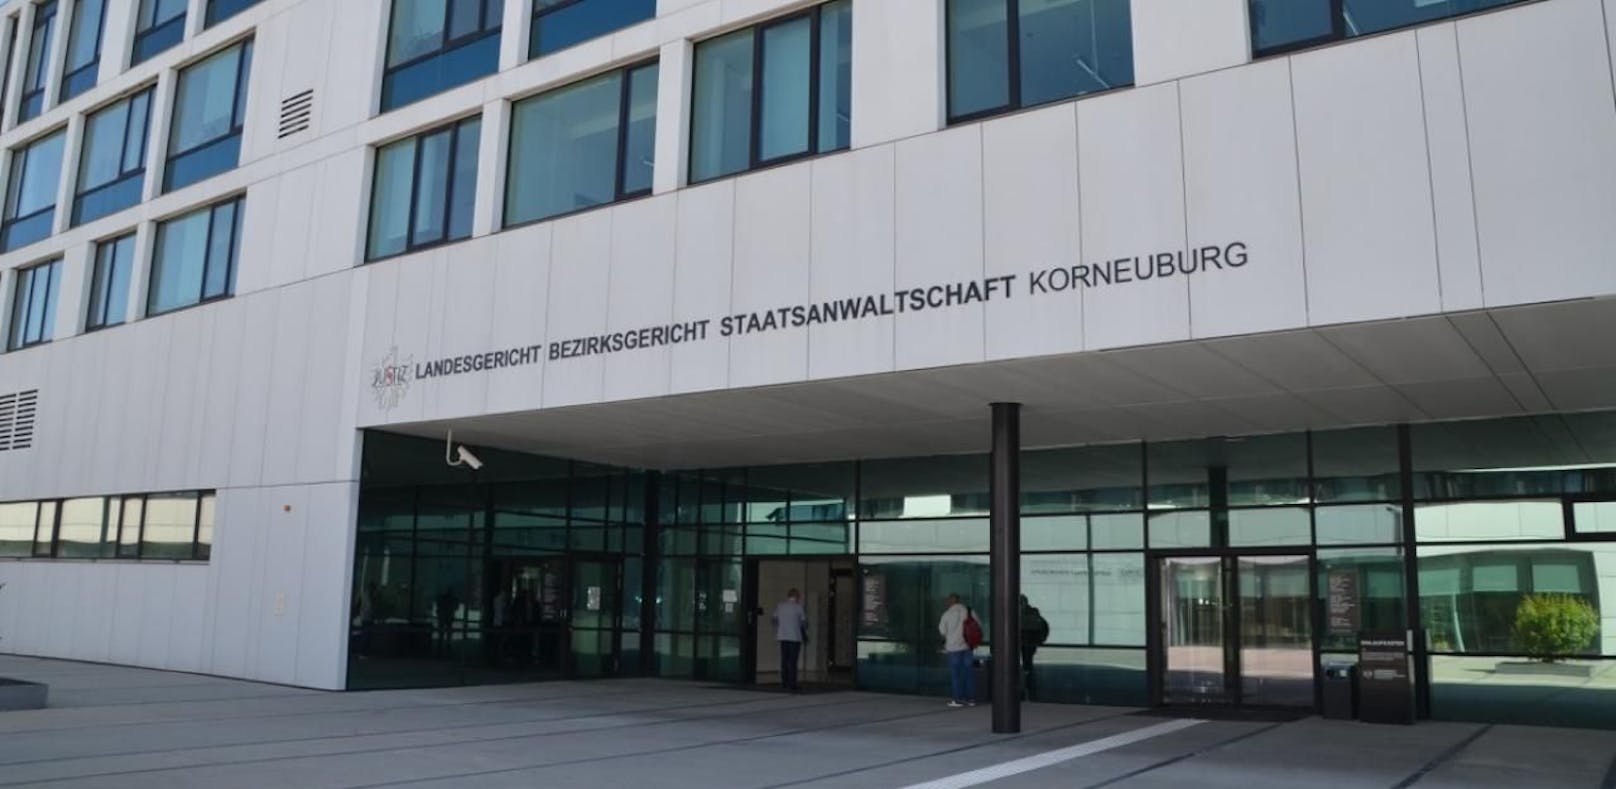 Am Landesgericht Korneuburg wurde der Prozess verhandelt.